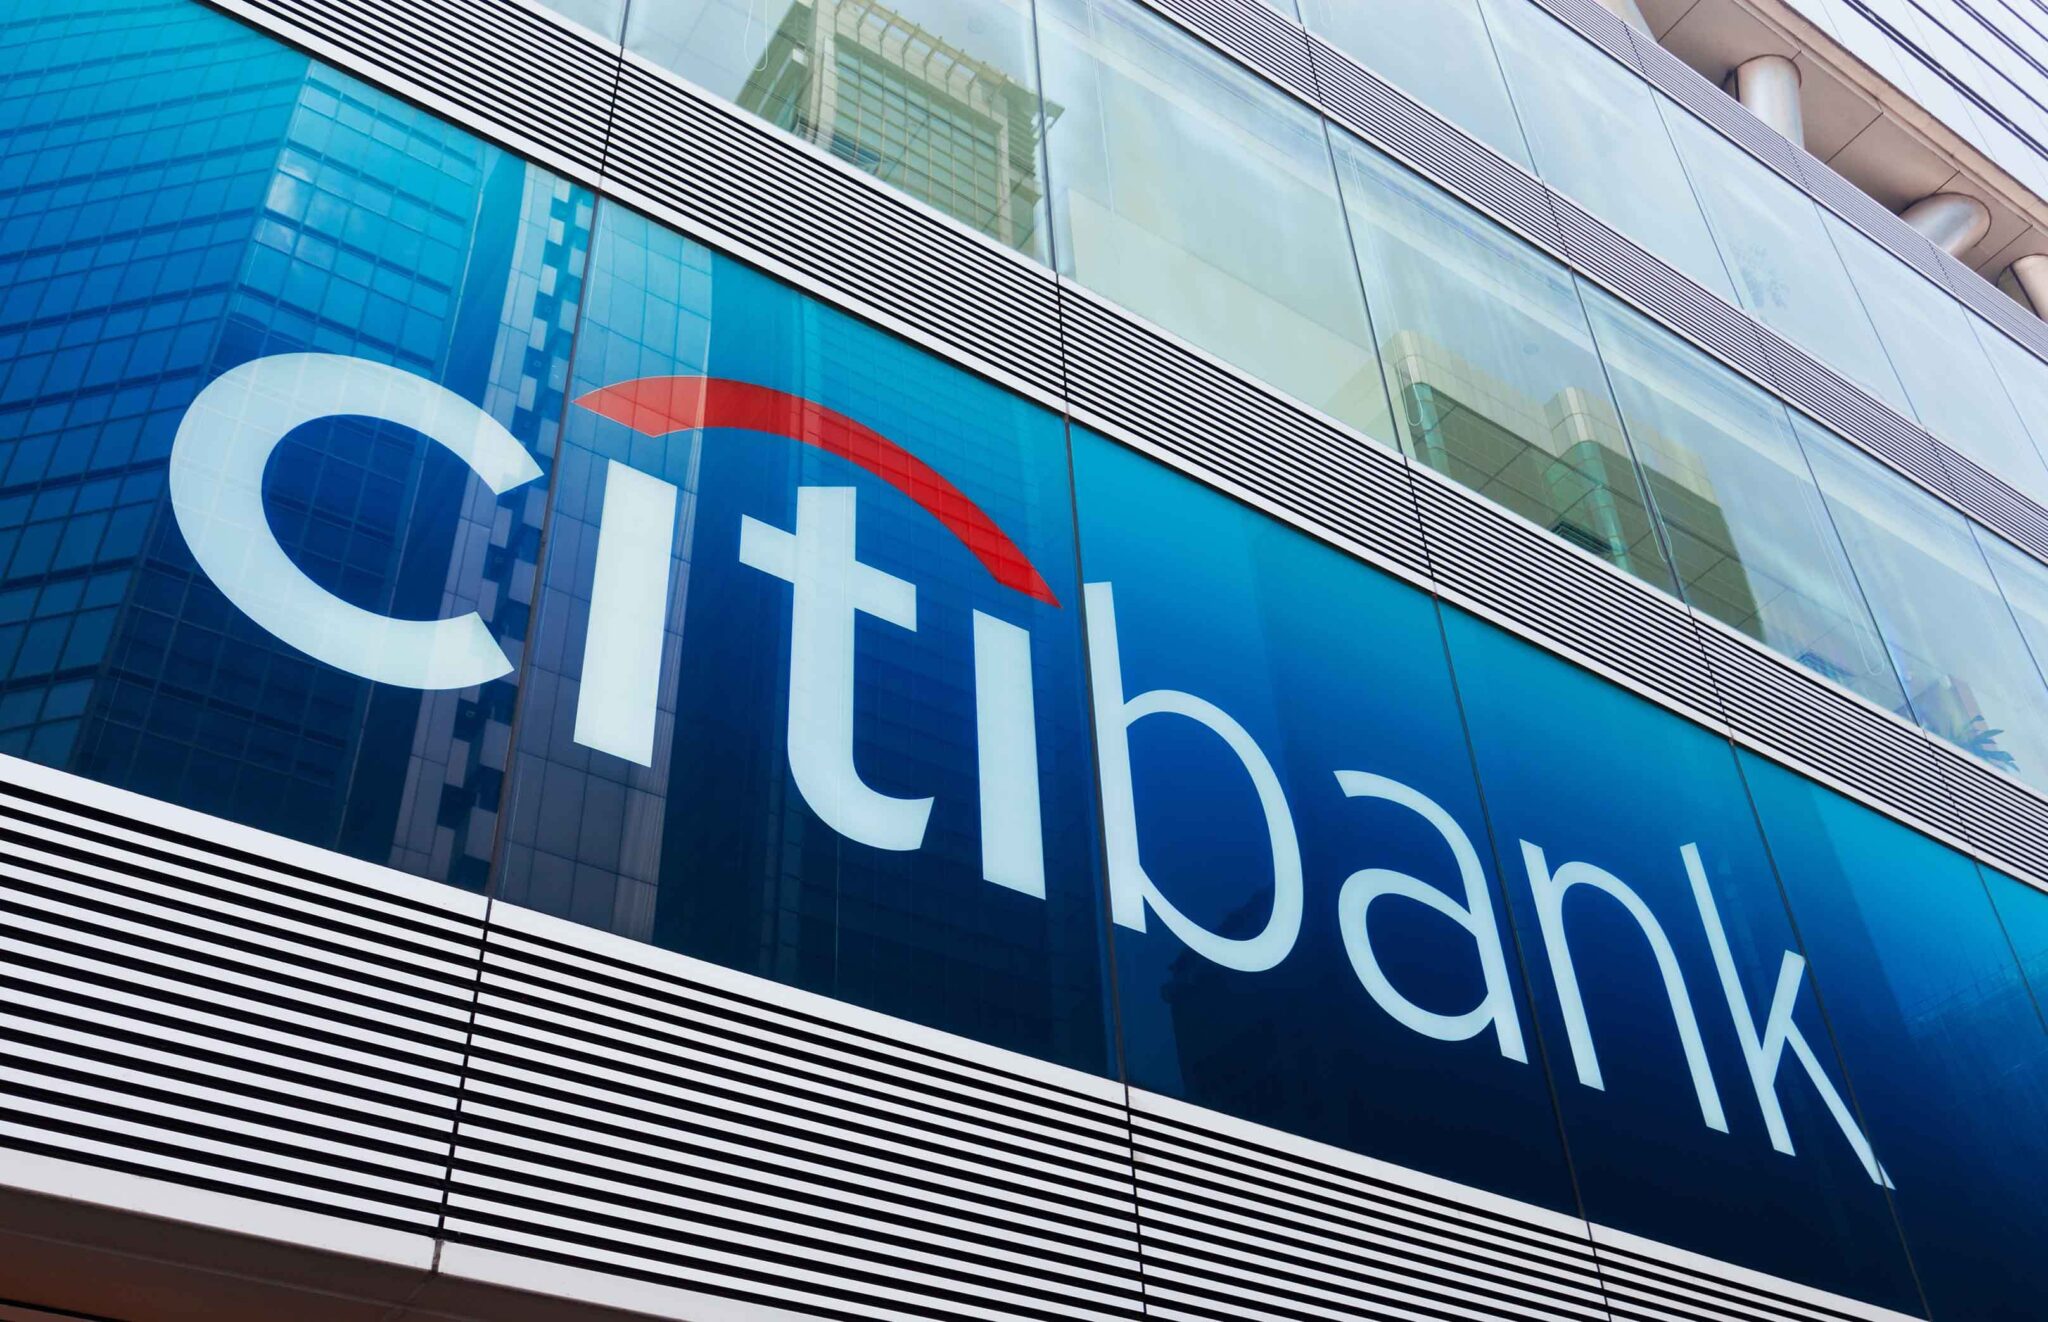 Citi Bank Announces a 1 Billion Plan to End Discriminatory Practices